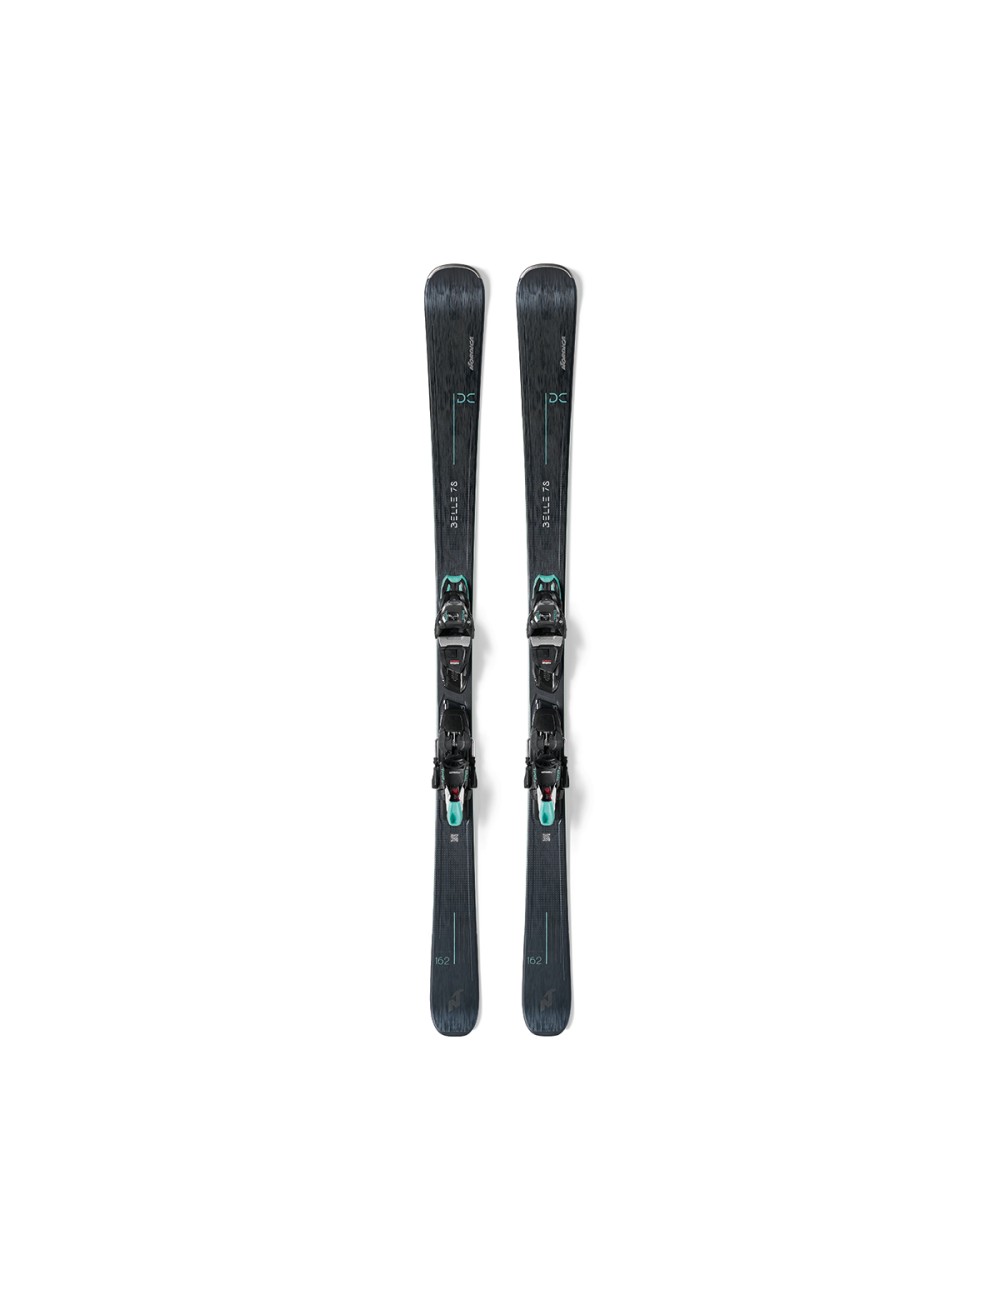 Nordica Wms Belle 78 Ski - Black/Teal